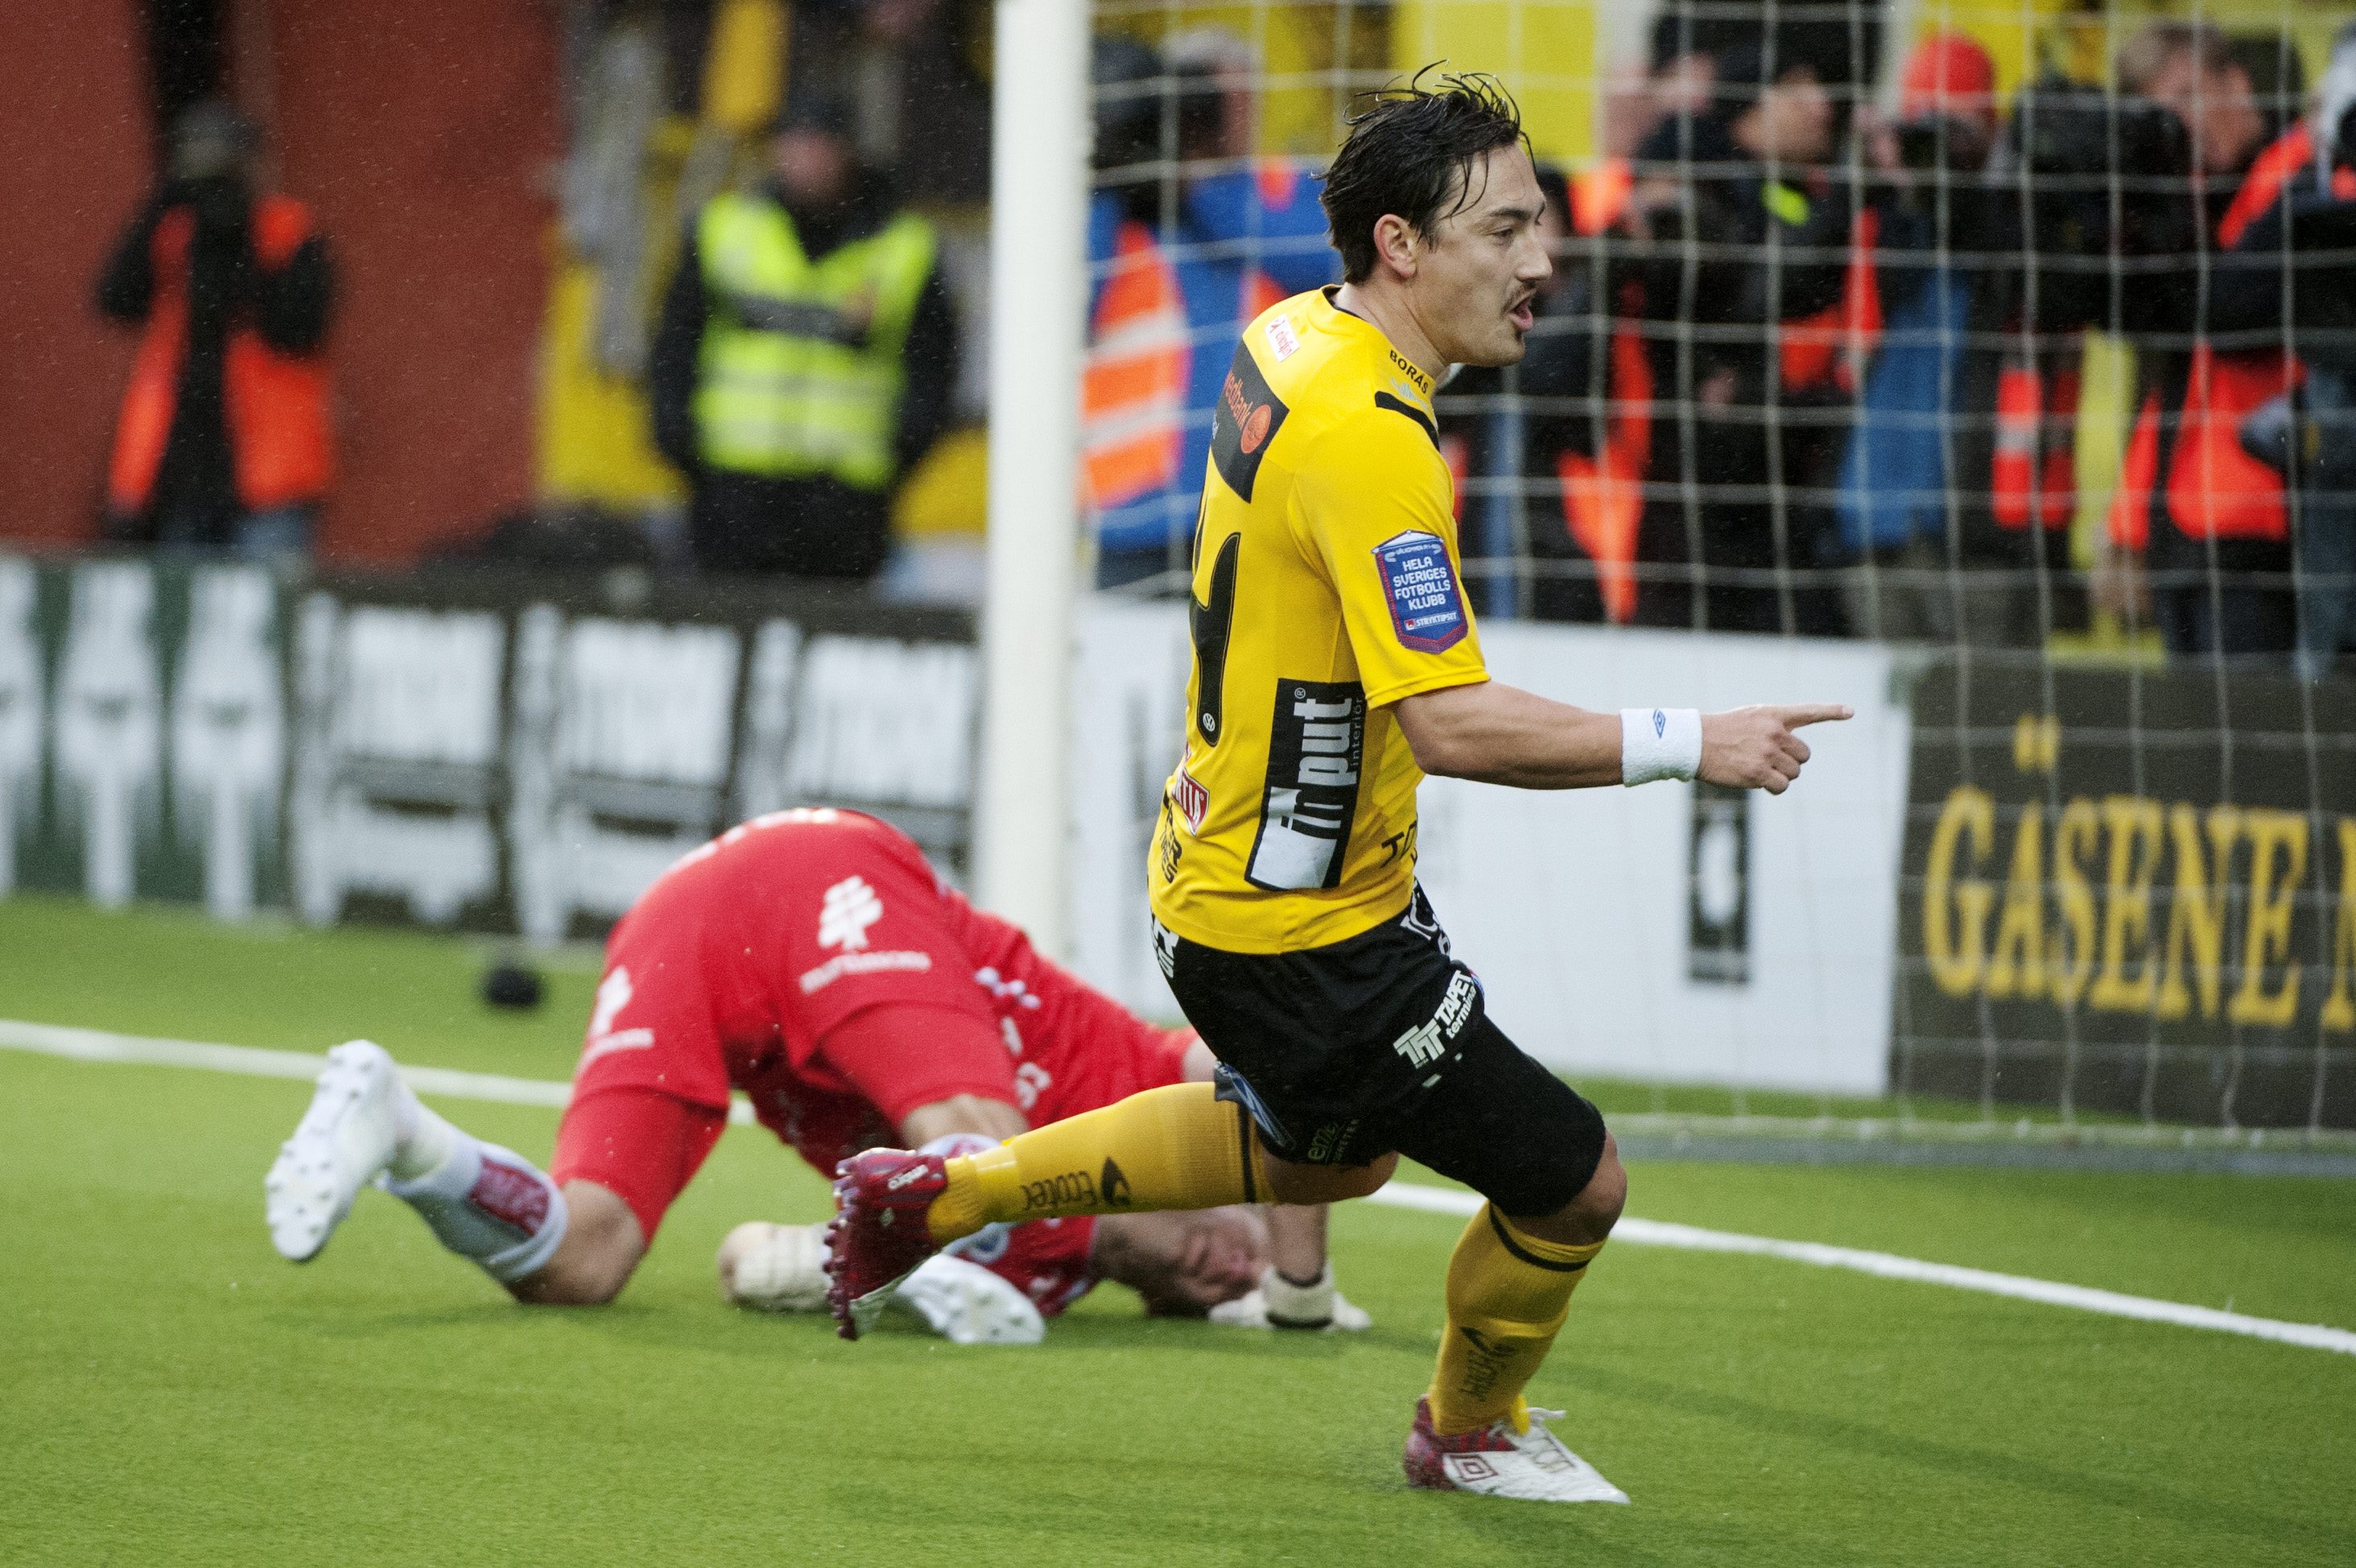 I 30:e minuten kom avgörandet - 1-0 till Elfsborg.